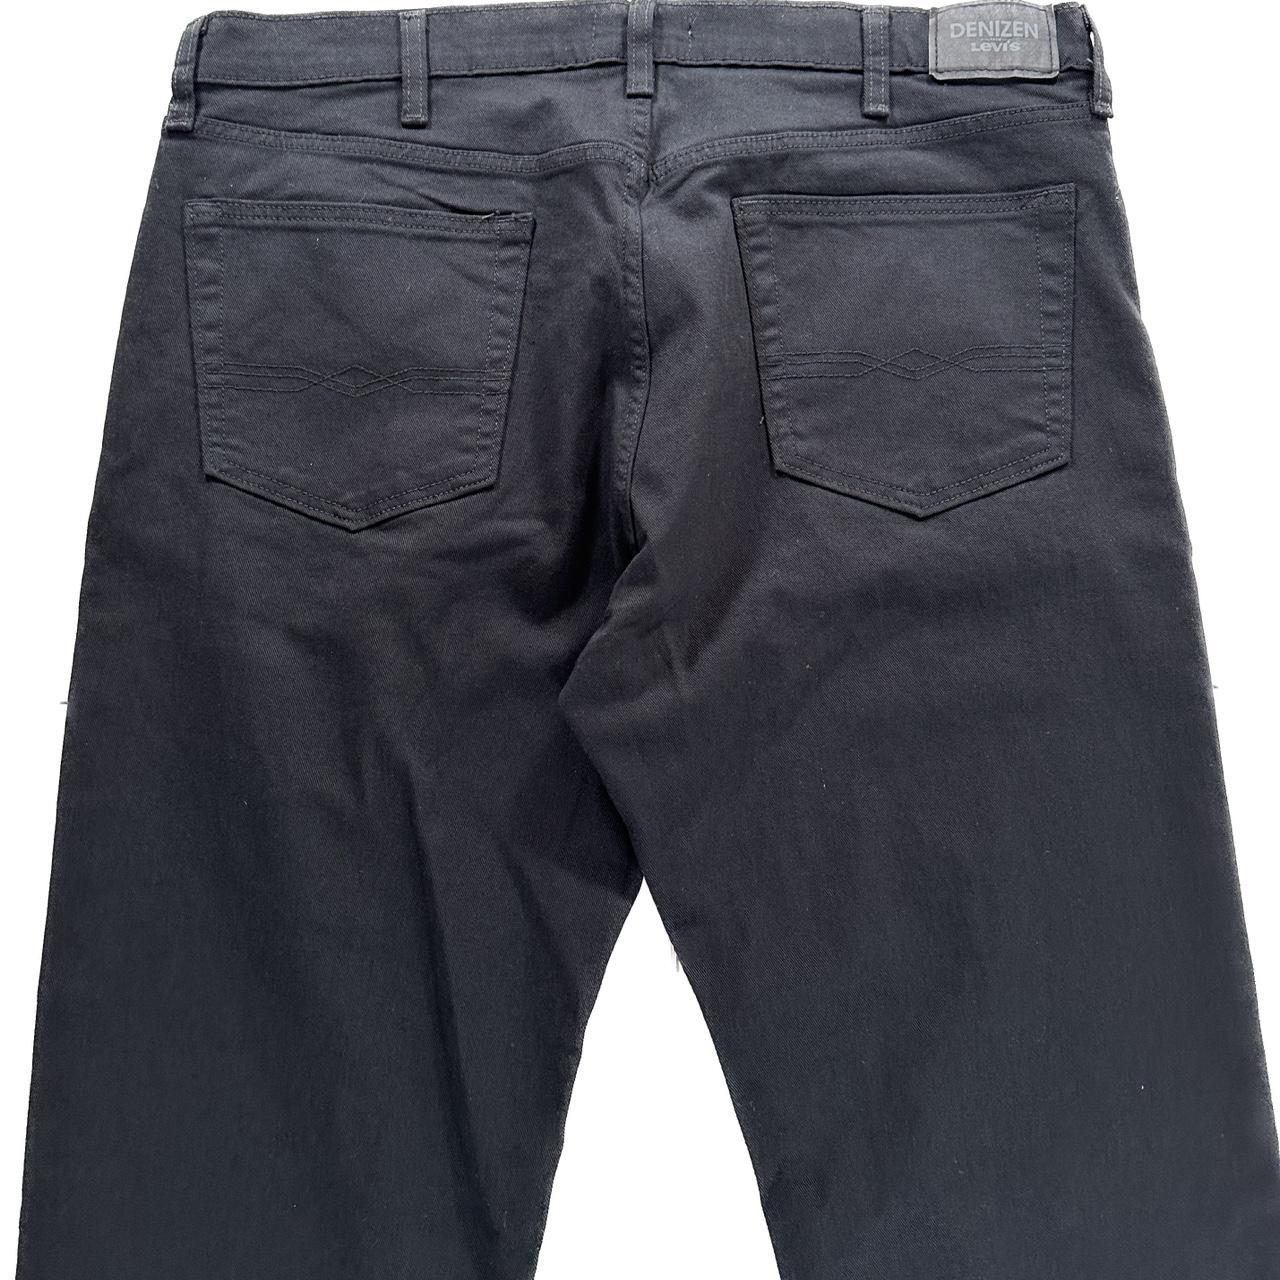 Levi’s Jeans Black Denim Pants 38x34 Denizen 285... - Depop